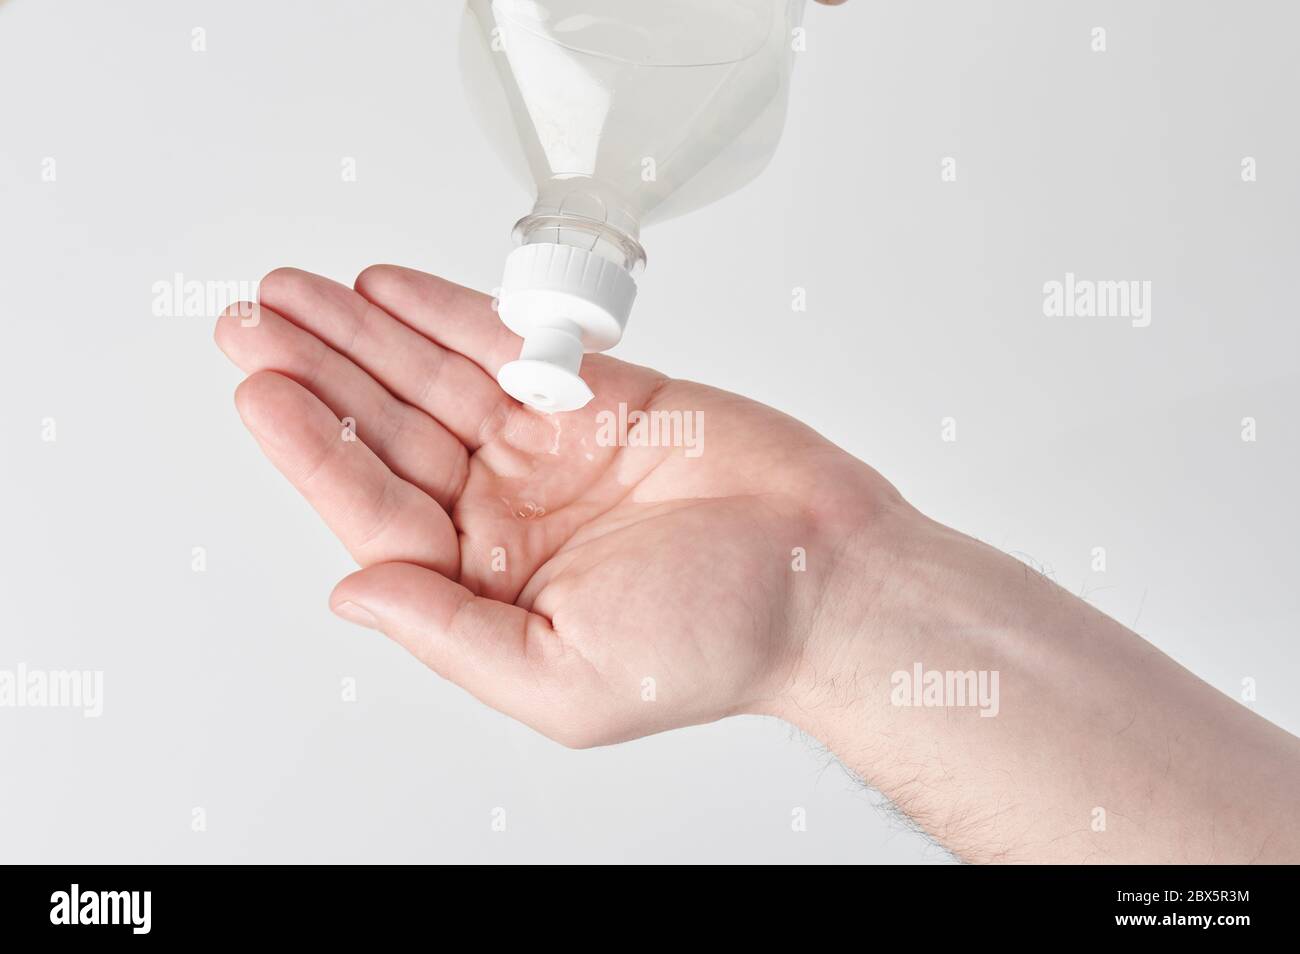 Verser du gel antibactérien à la main, isolé sur fond blanc Banque D'Images